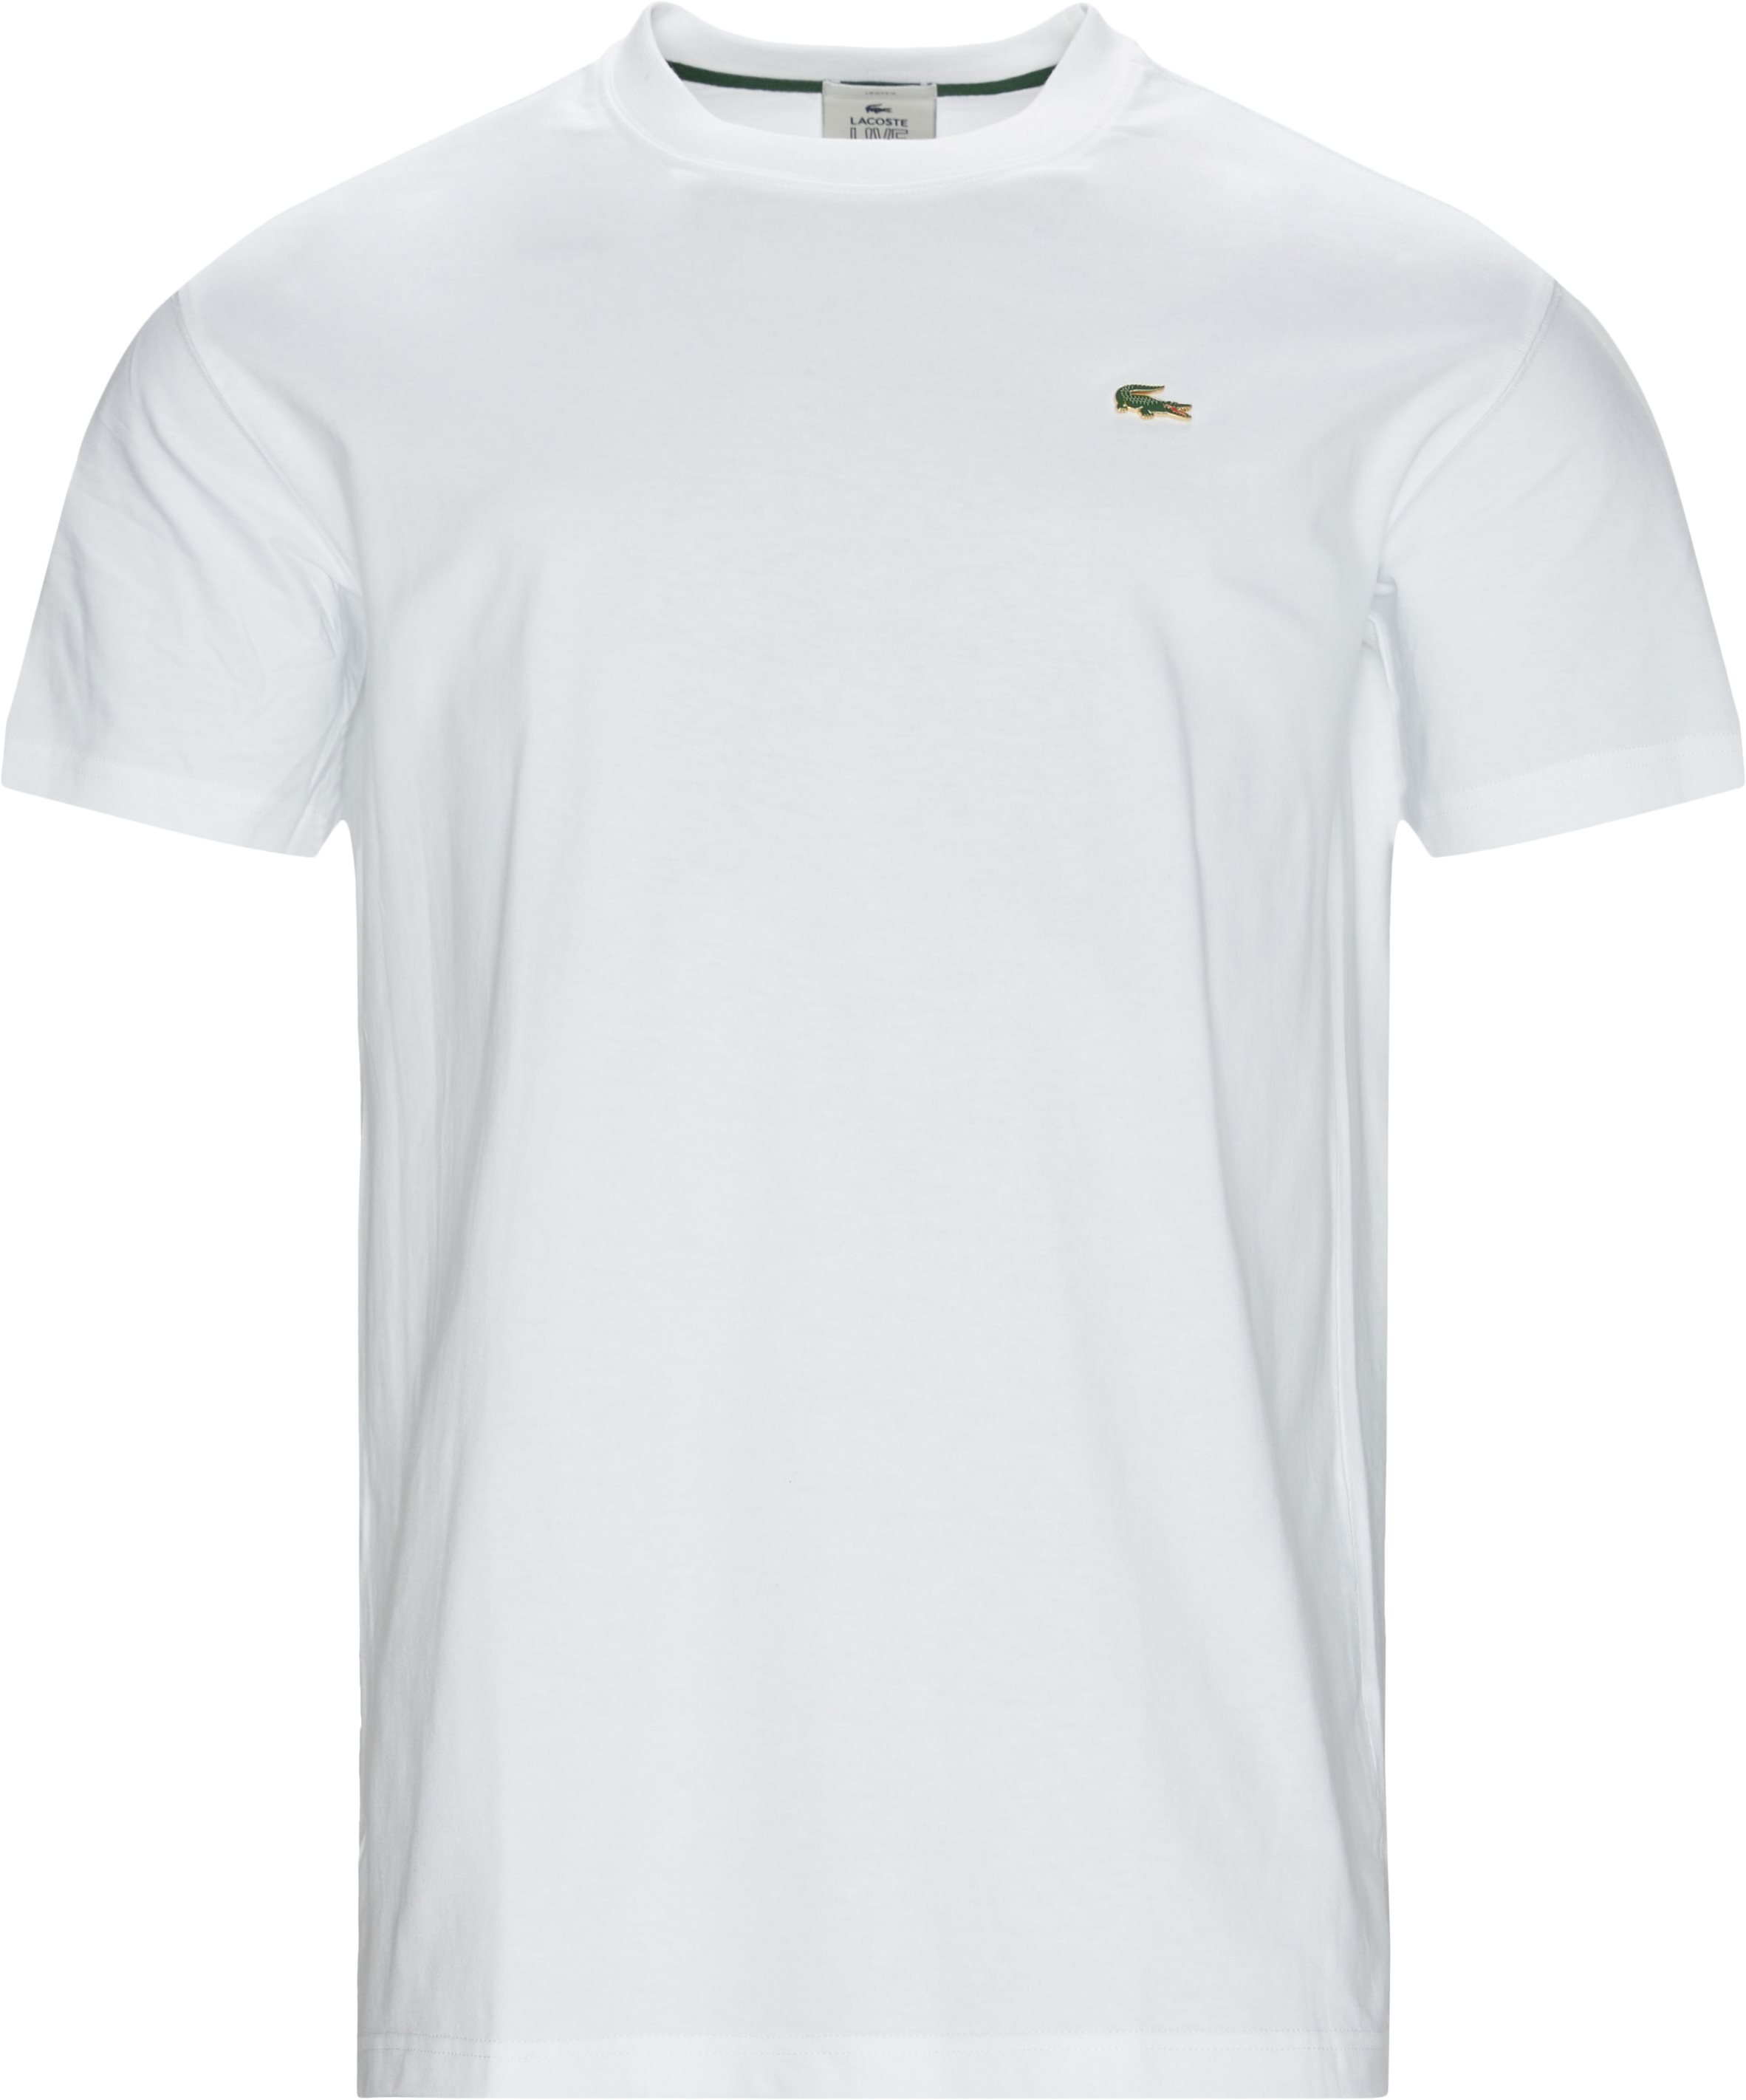 Th9162 Tee - T-shirts - Regular fit - Vit